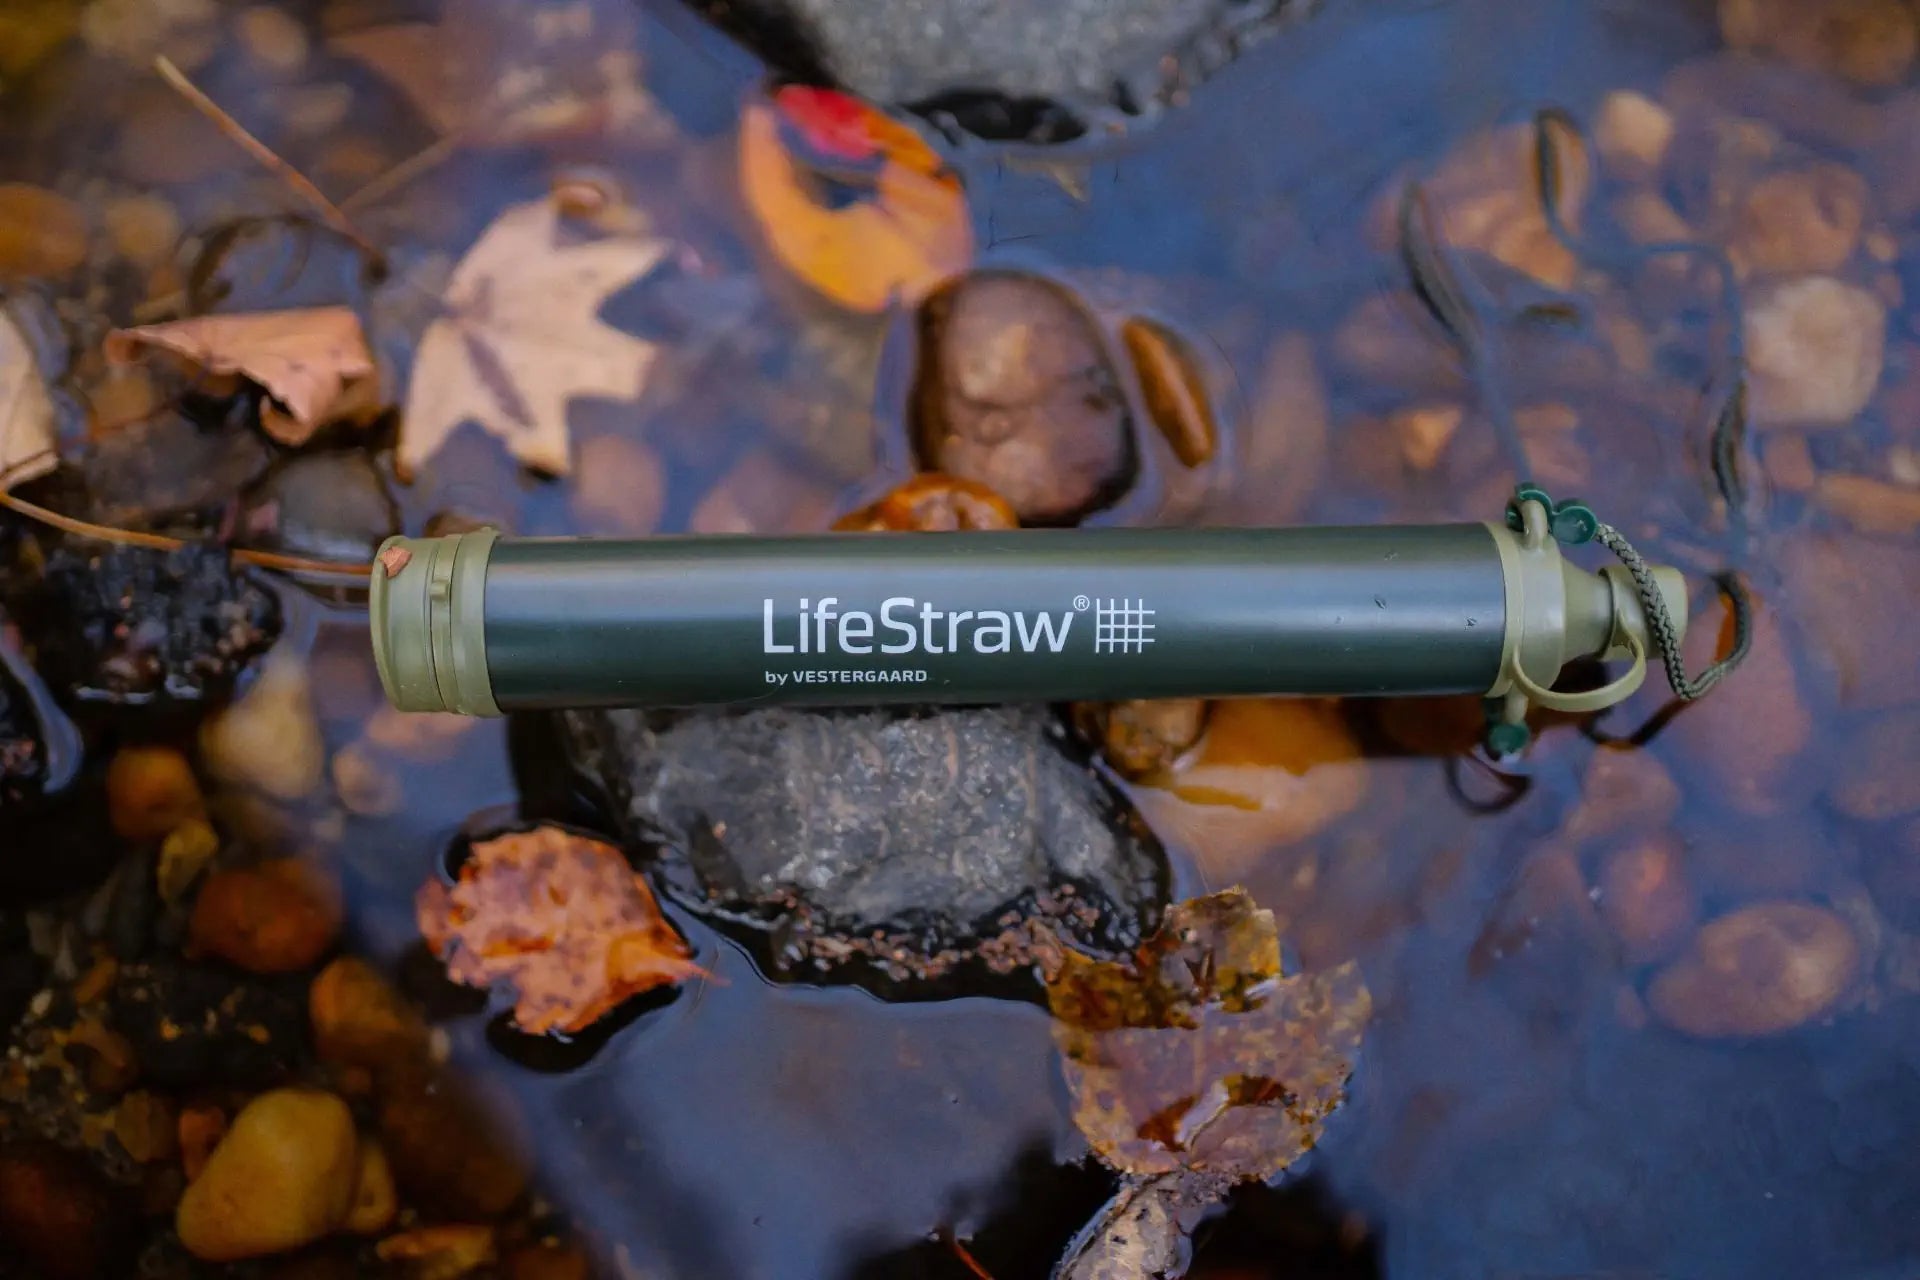 LifeStraw Personal, filtre à boire à emporter